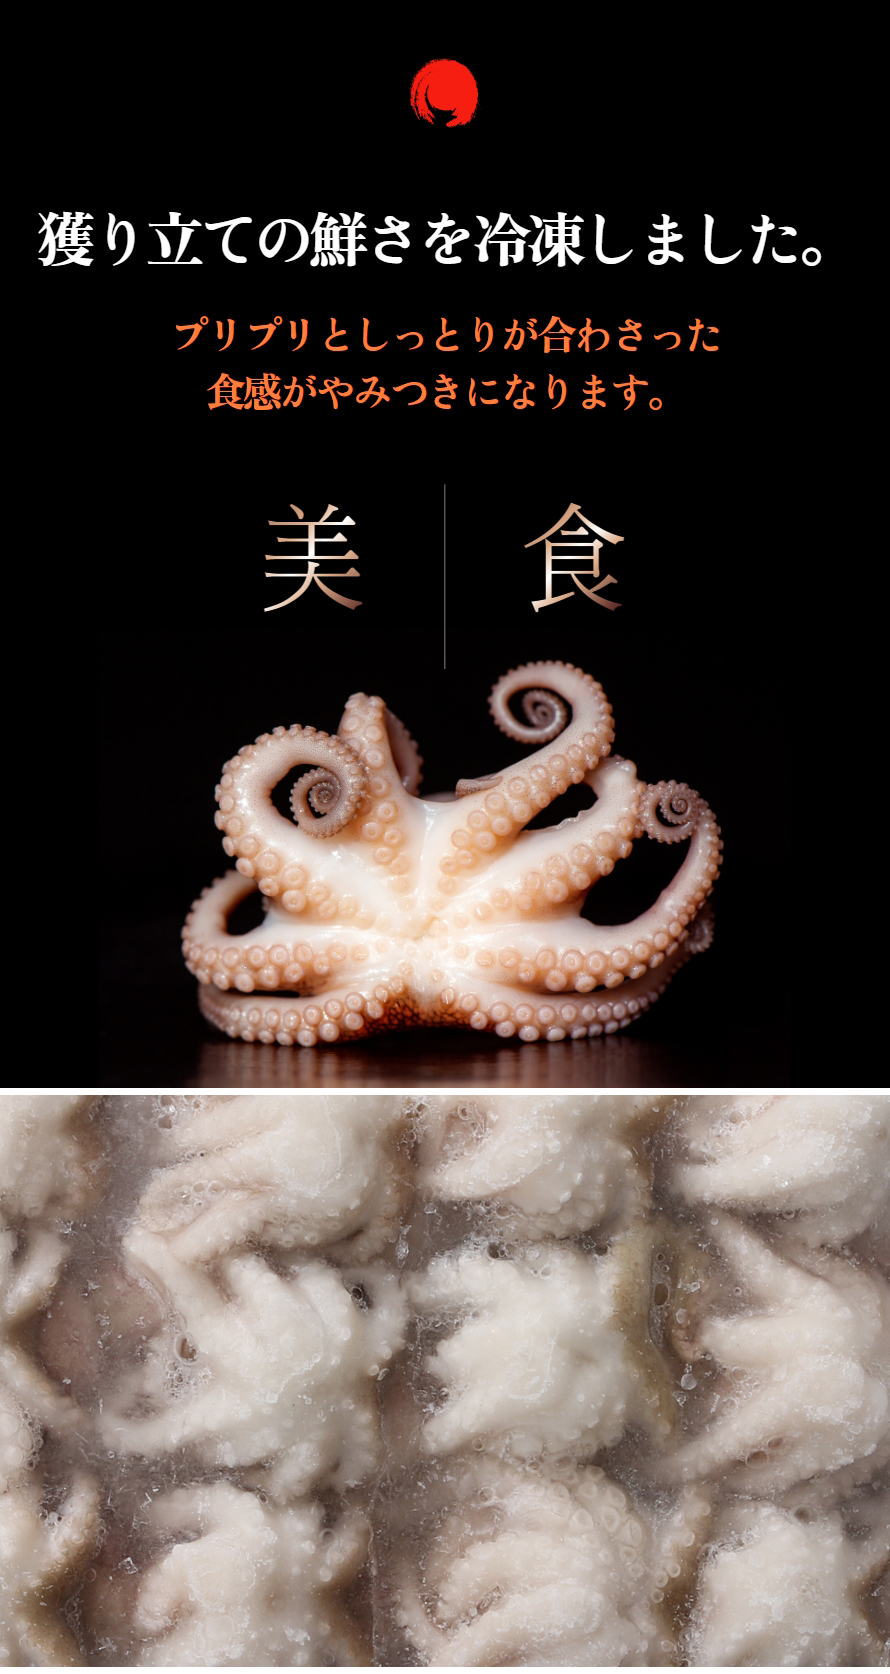 [凍]冷凍イイダコ400g/下処理済み バラ凍結で使いやすい タコ たこ 蛸 チュクミ